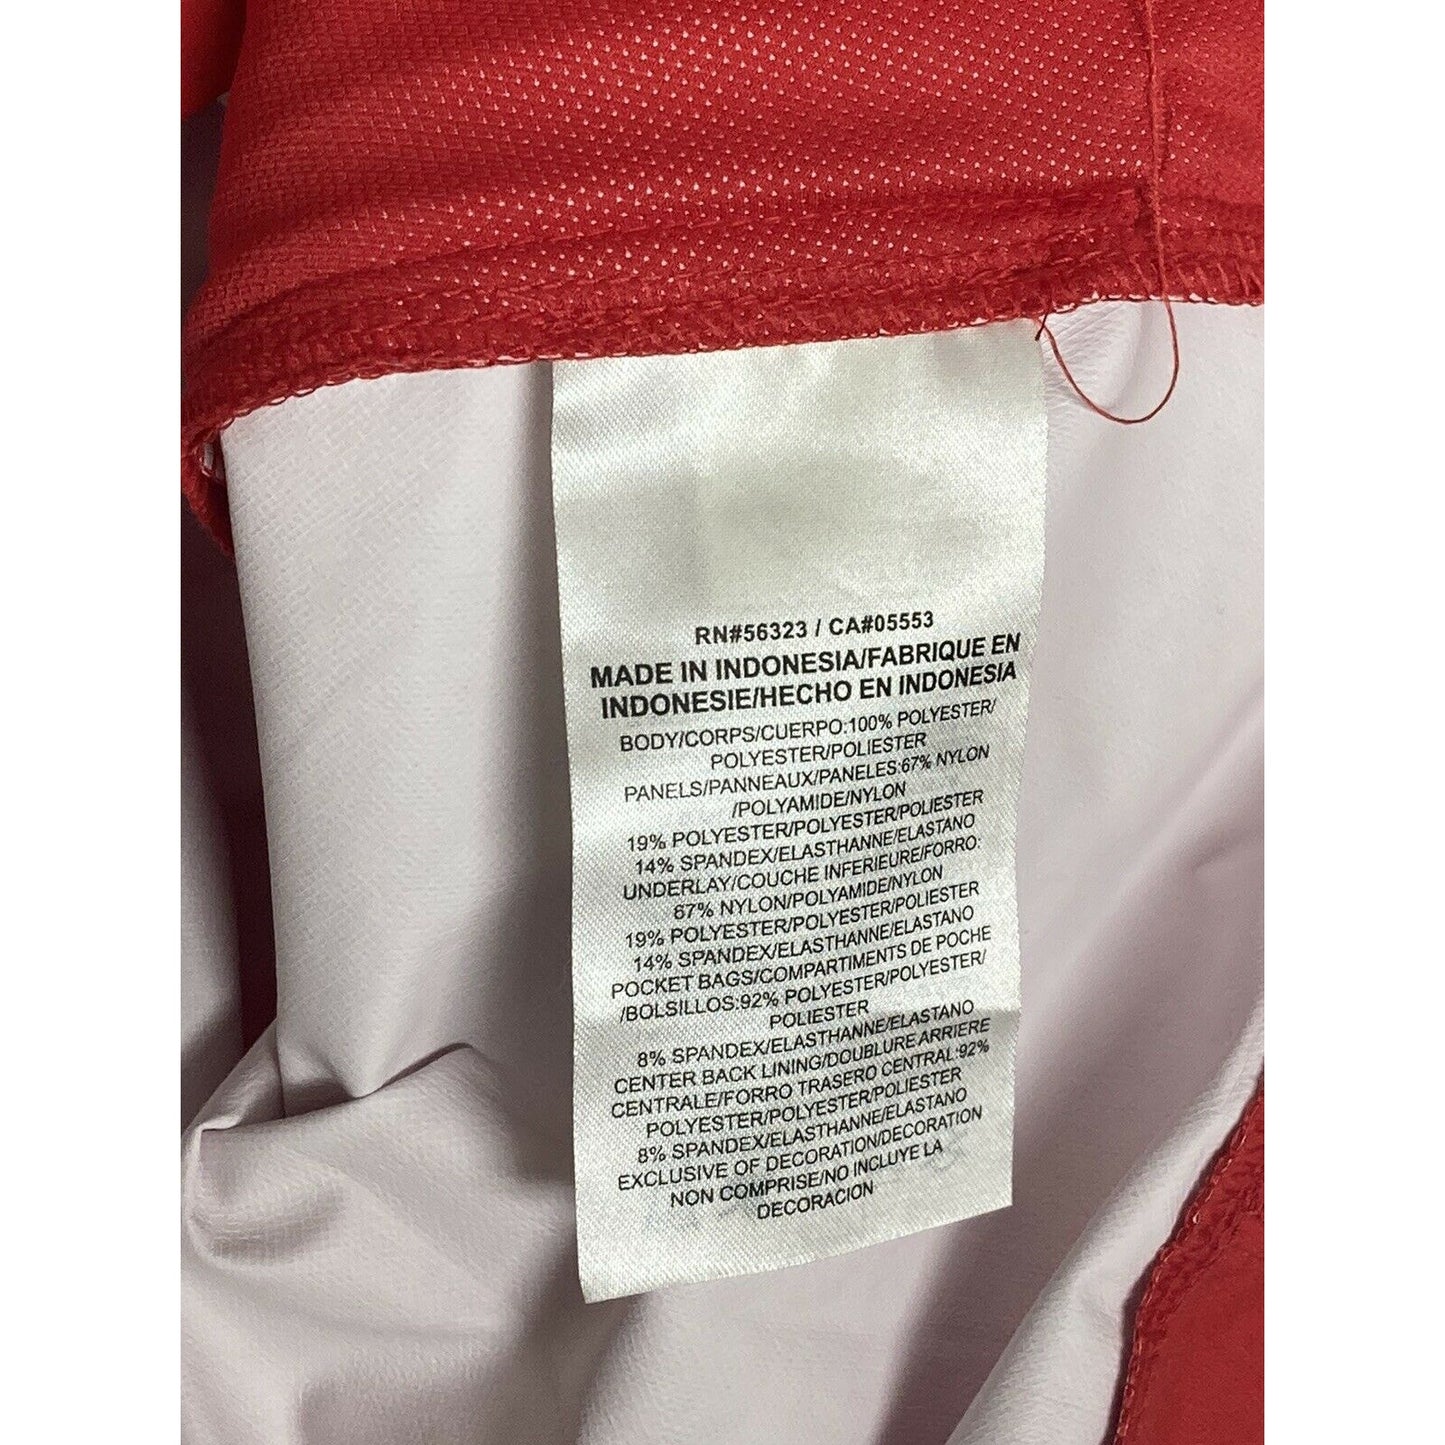 Nike Men's Hot Baseball Jacket Short Sleeve Size Large Team Red 897383-657 NWT